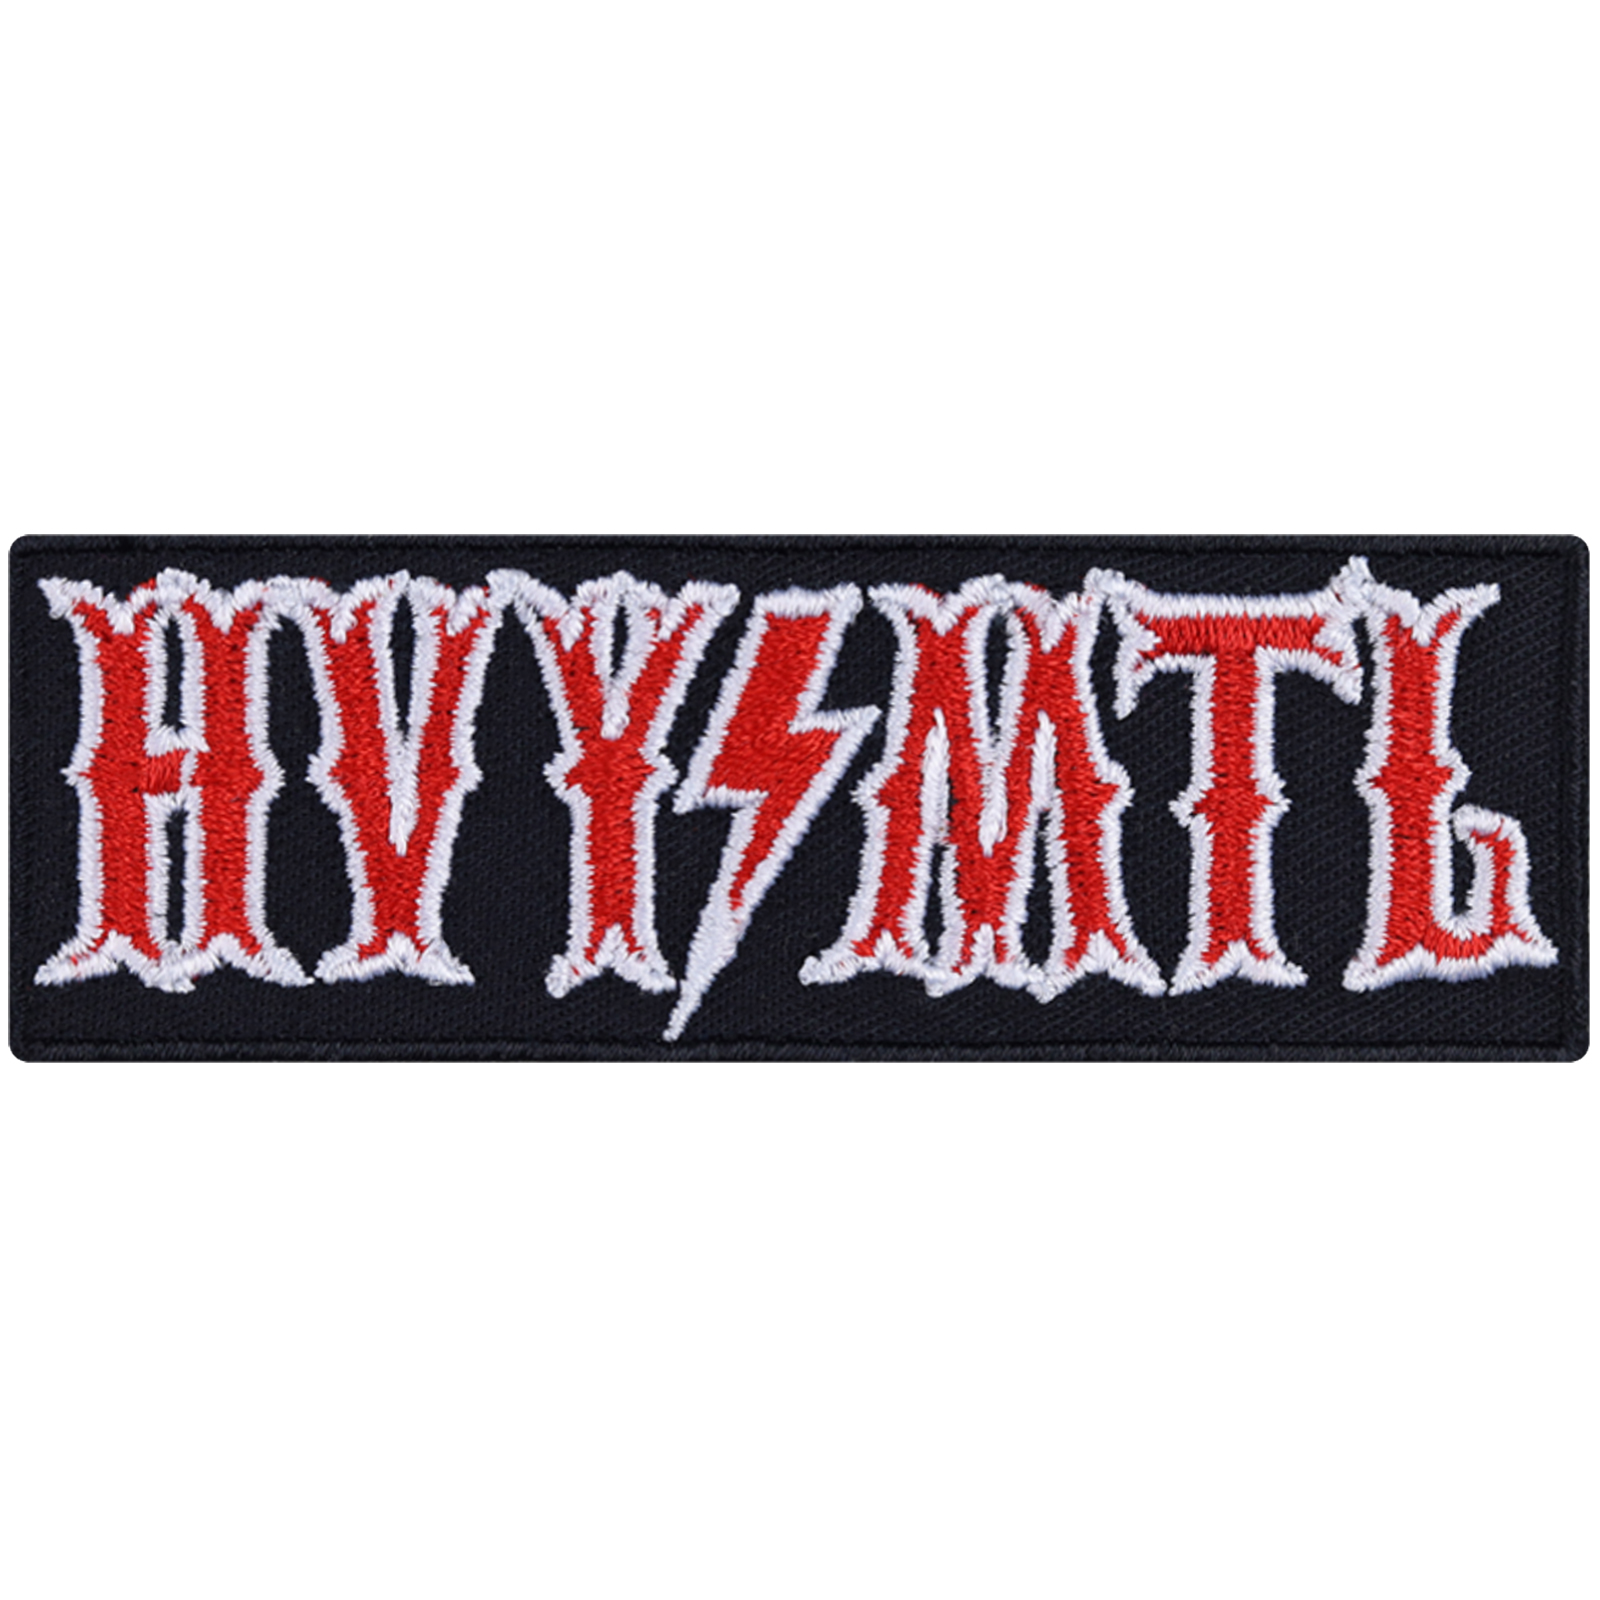 HVYMTL - Patch